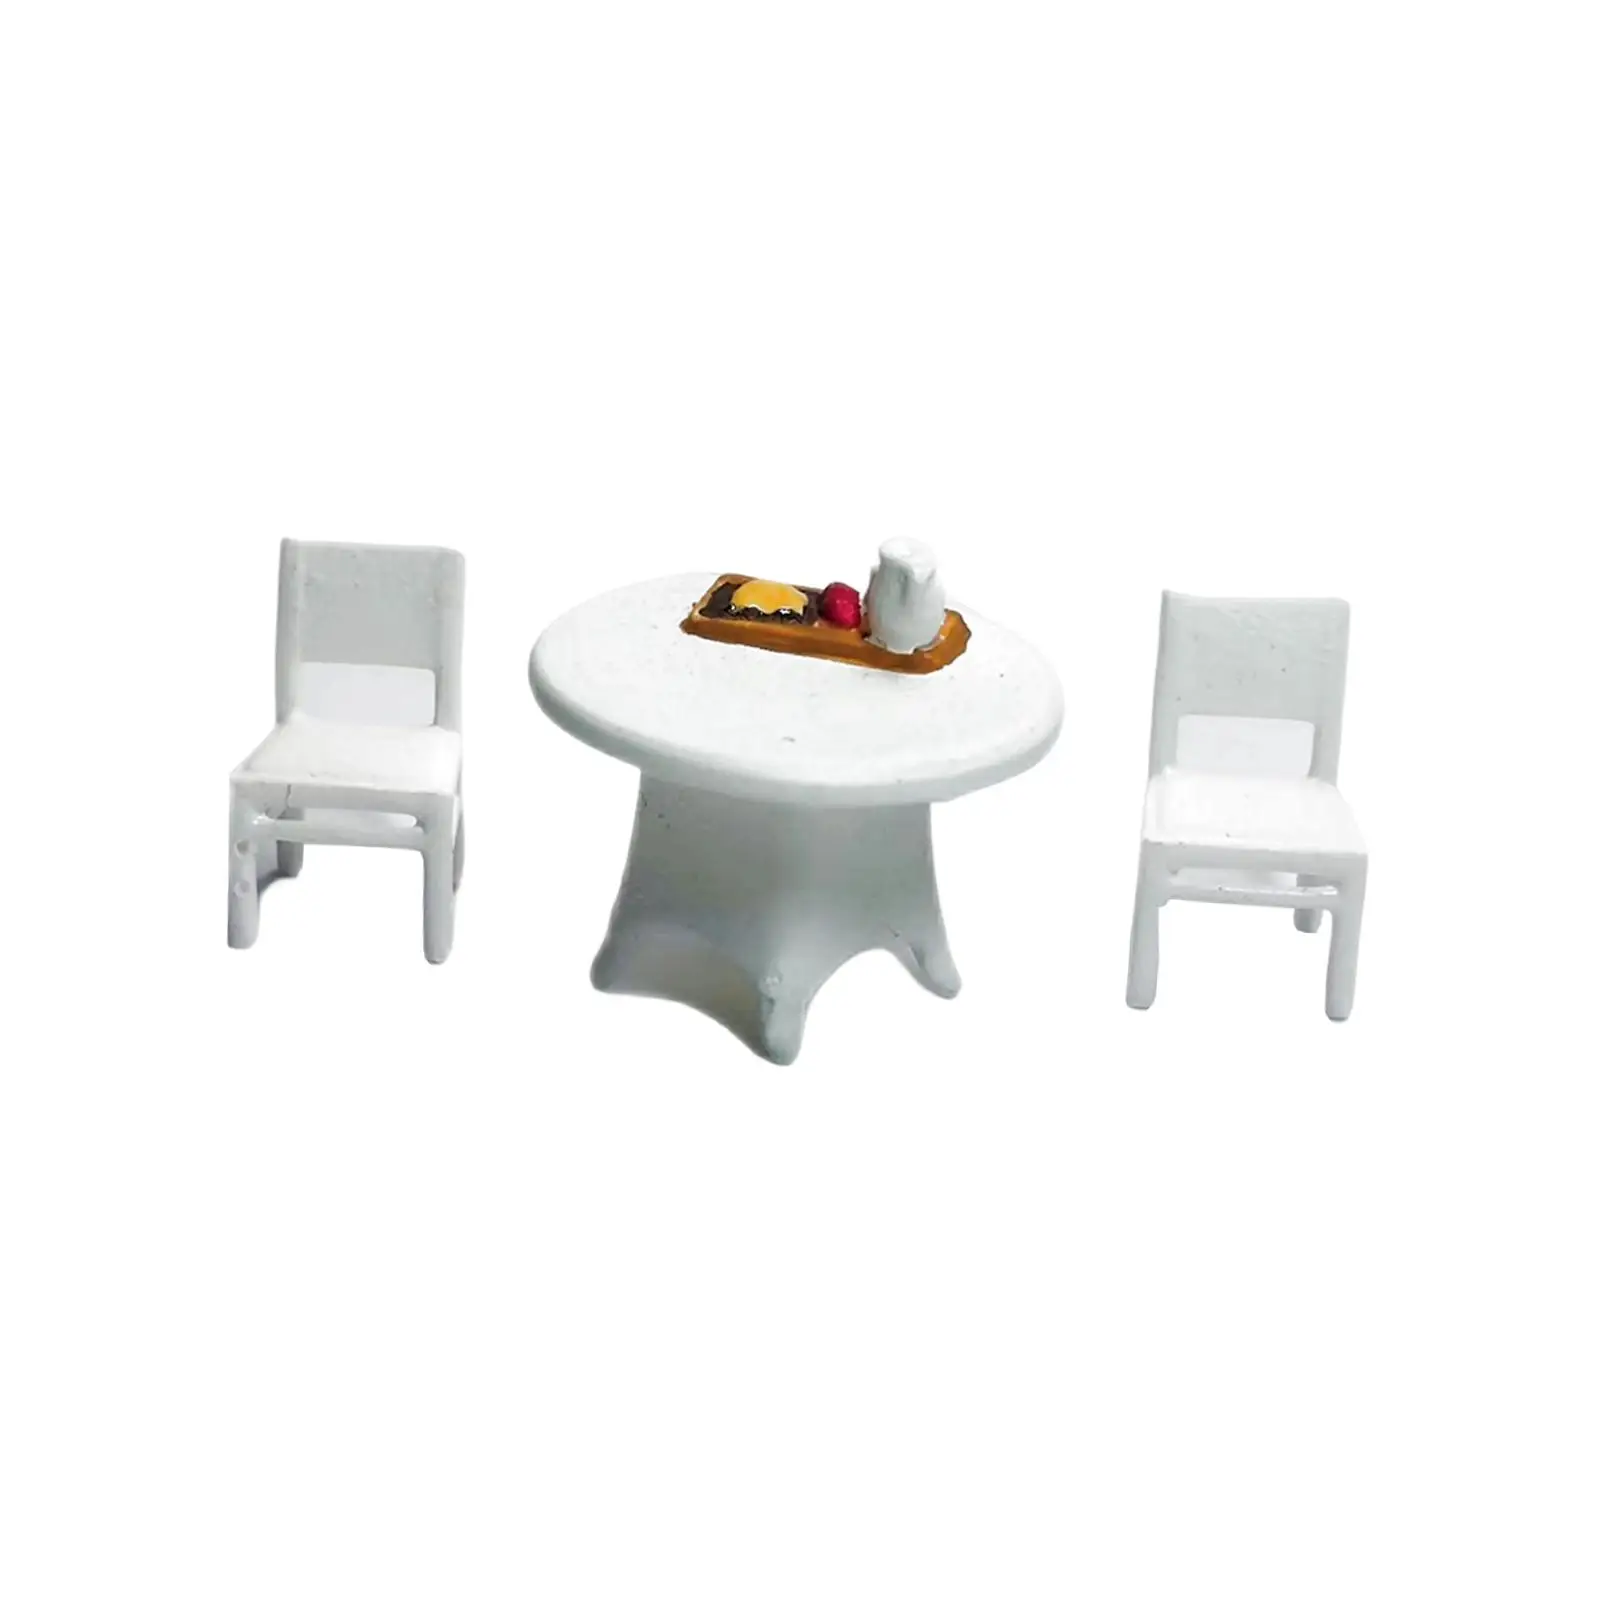 3 Pieces 1/64 Desk Chair Set Desktop Ornament Sand Table Layout Decoration Trains Architectural Miniature Resin Crafts Decor